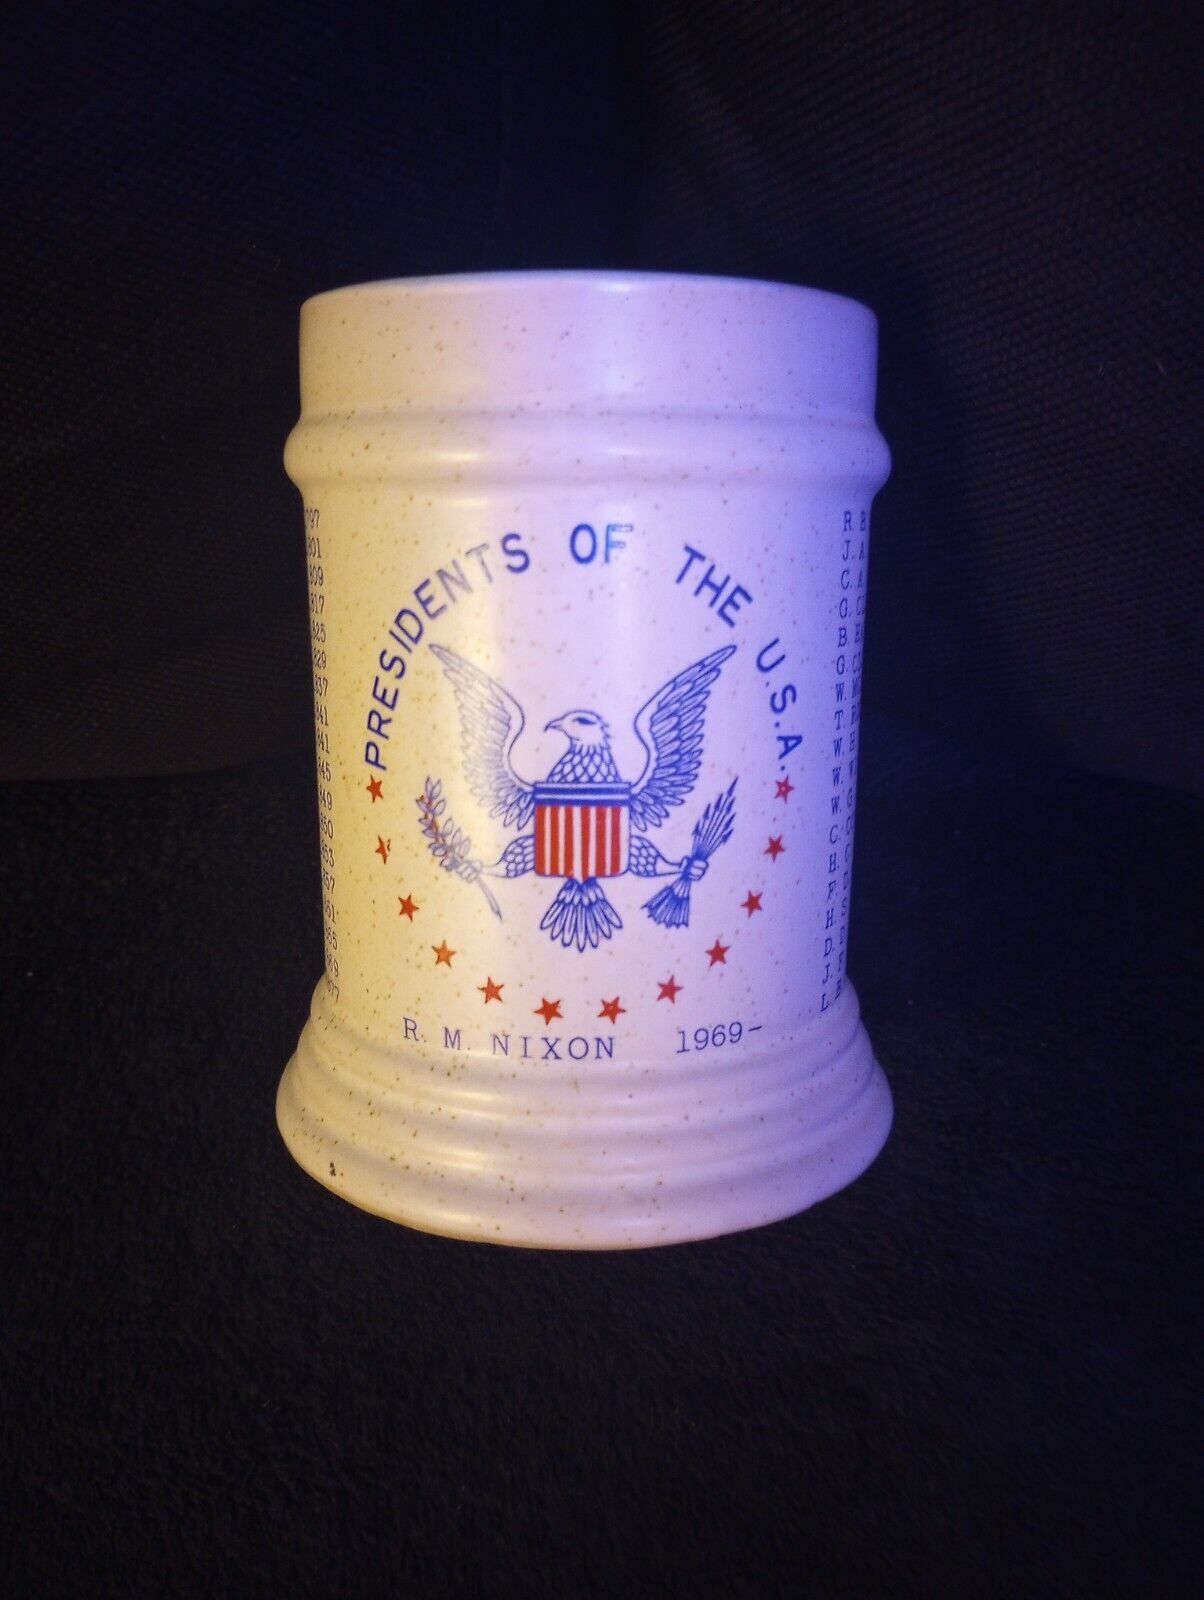 Genuine Stoneware 1969 R.M. Nixon Presidents of the USA Mug Vintage